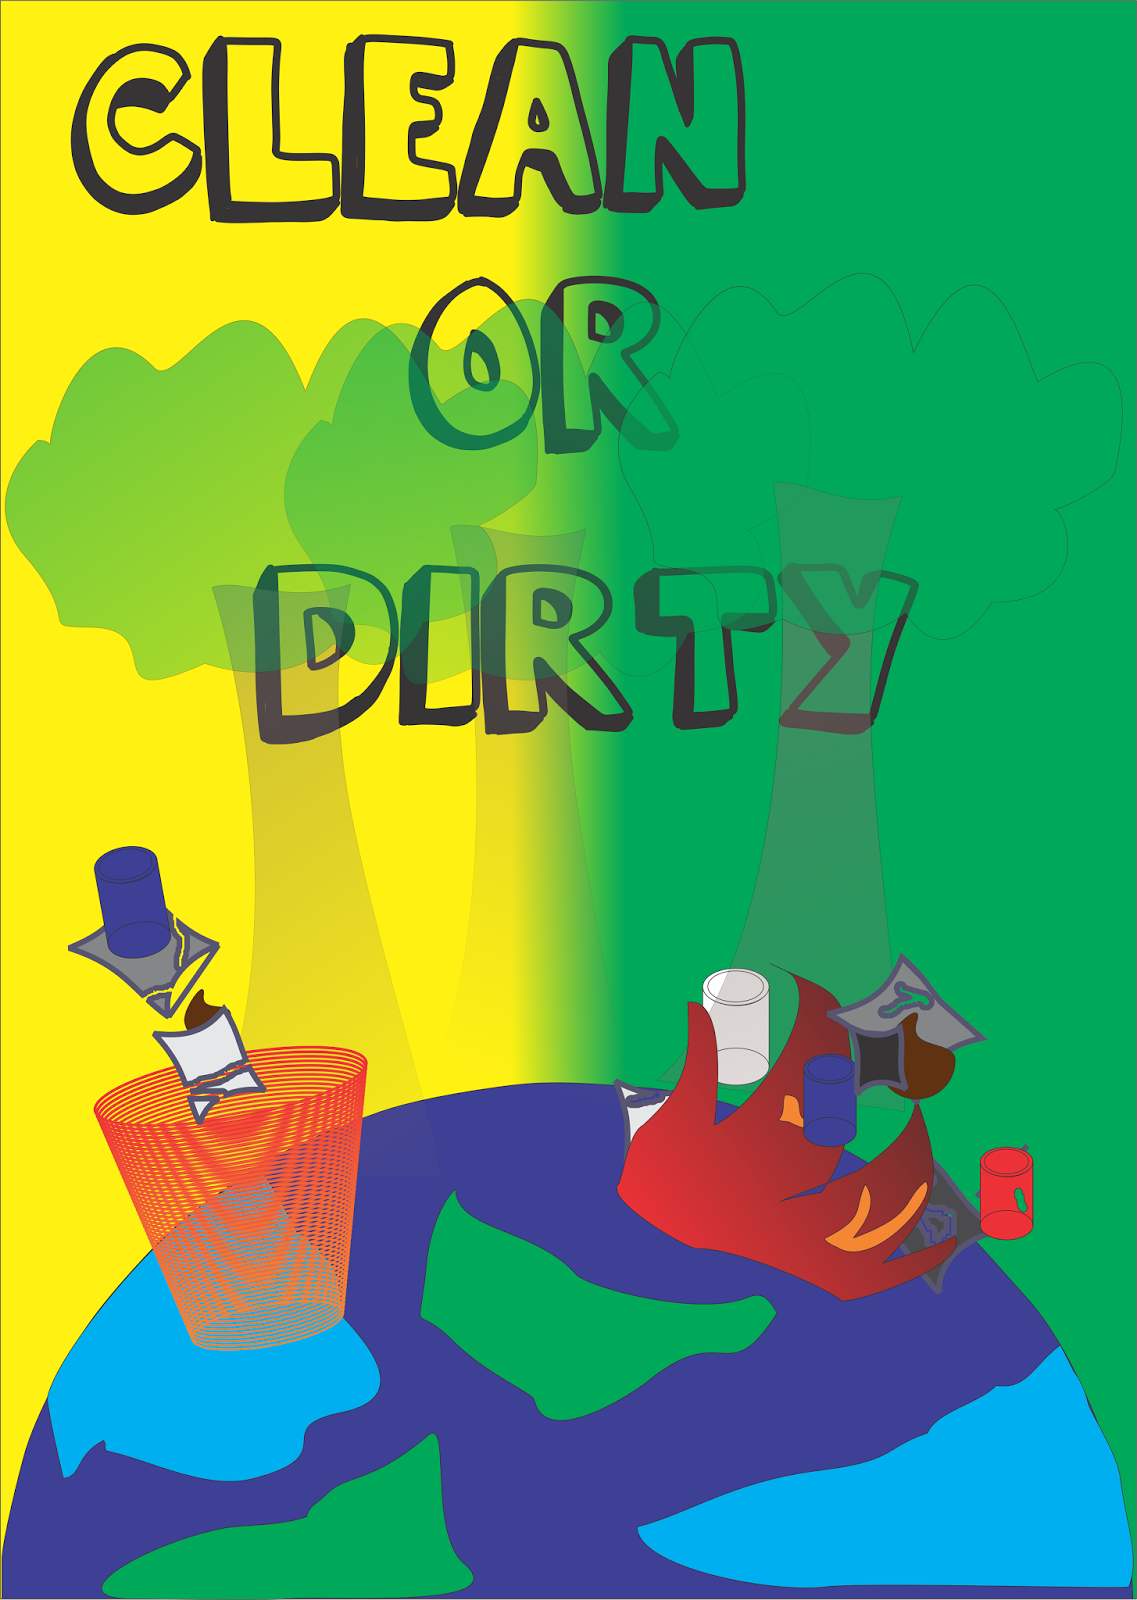 Materi Pelajaran 9 Contoh Gambar Poster Lingkungan Hidup Yang